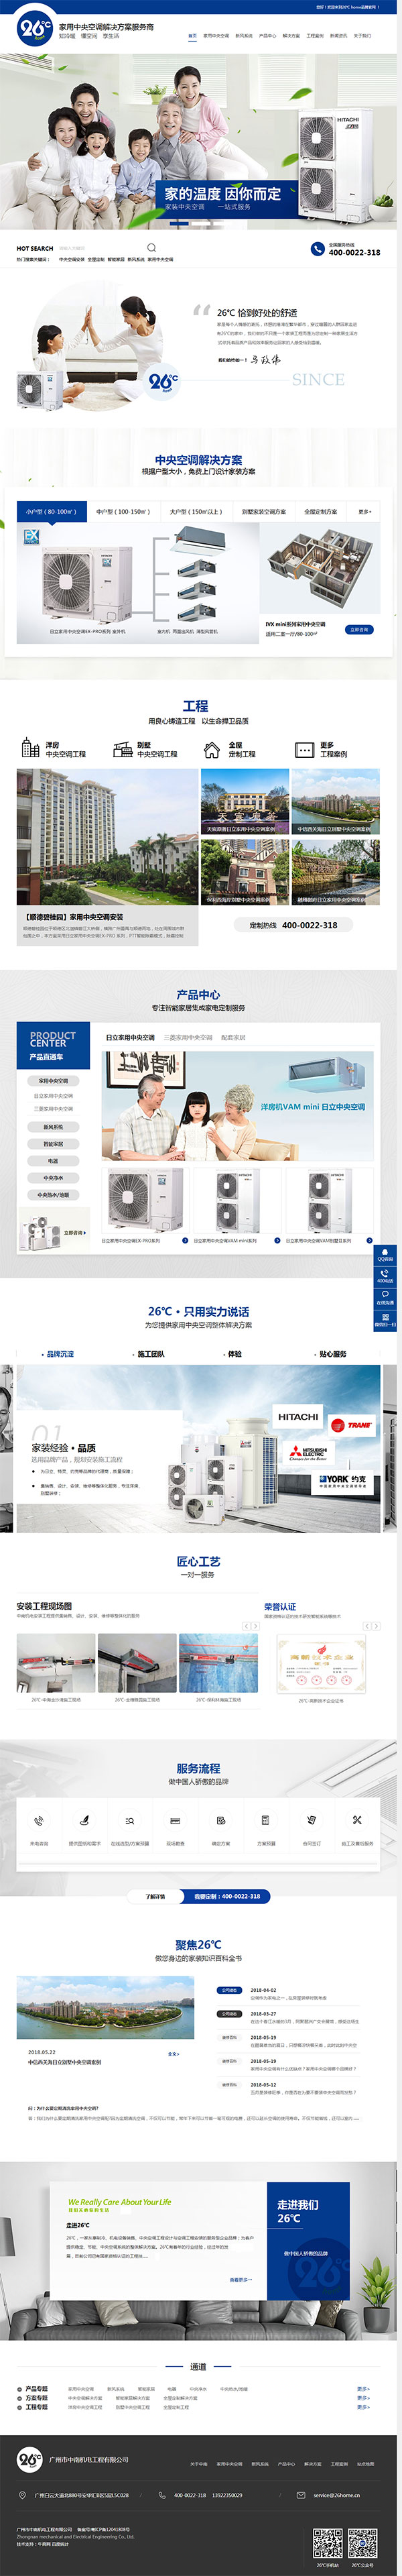 广州中南机电工程-营销型网站首页